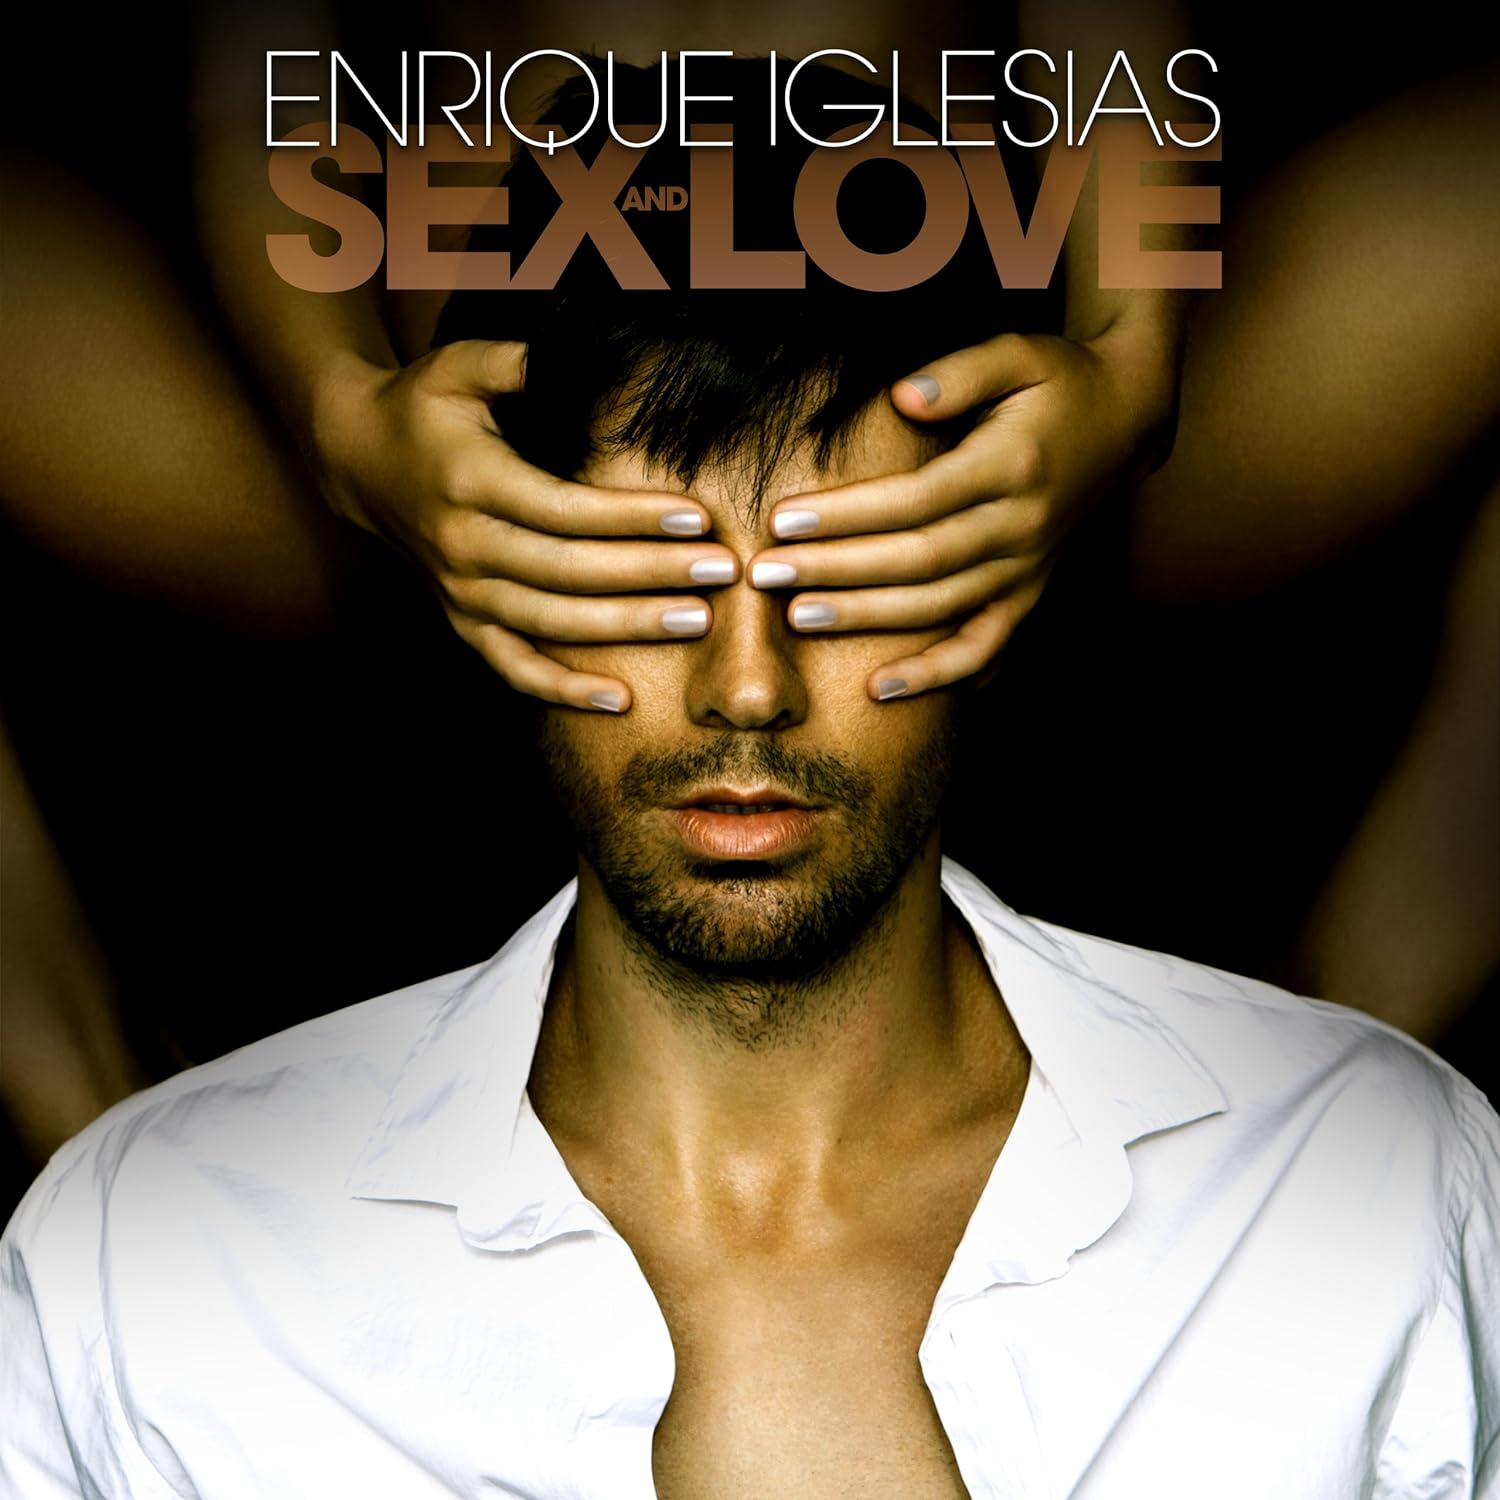 Sex Enrique Iglesias